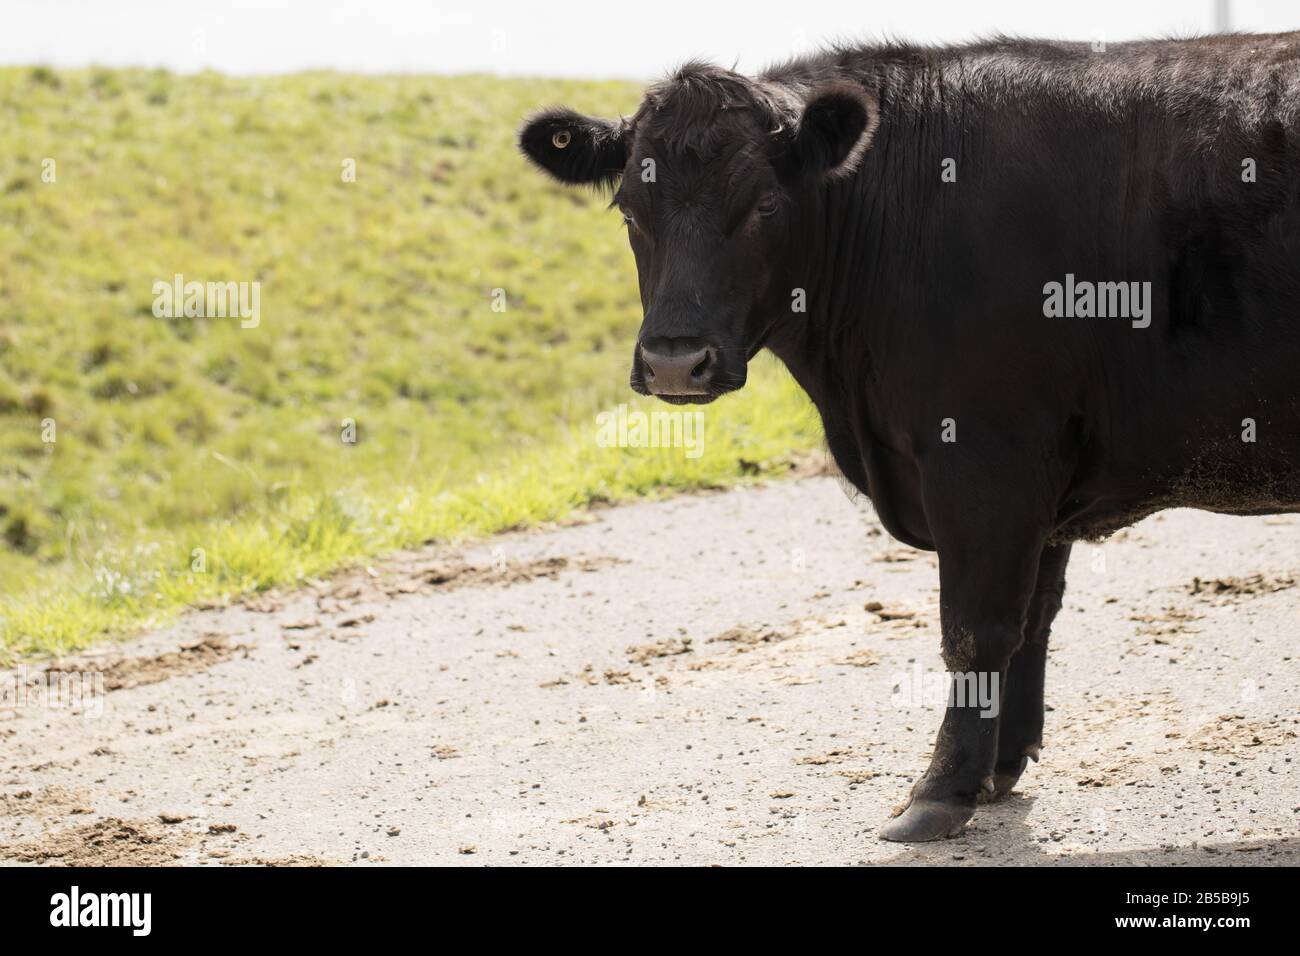 Vaca negra (Bos taurus) en una granja Foto de stock